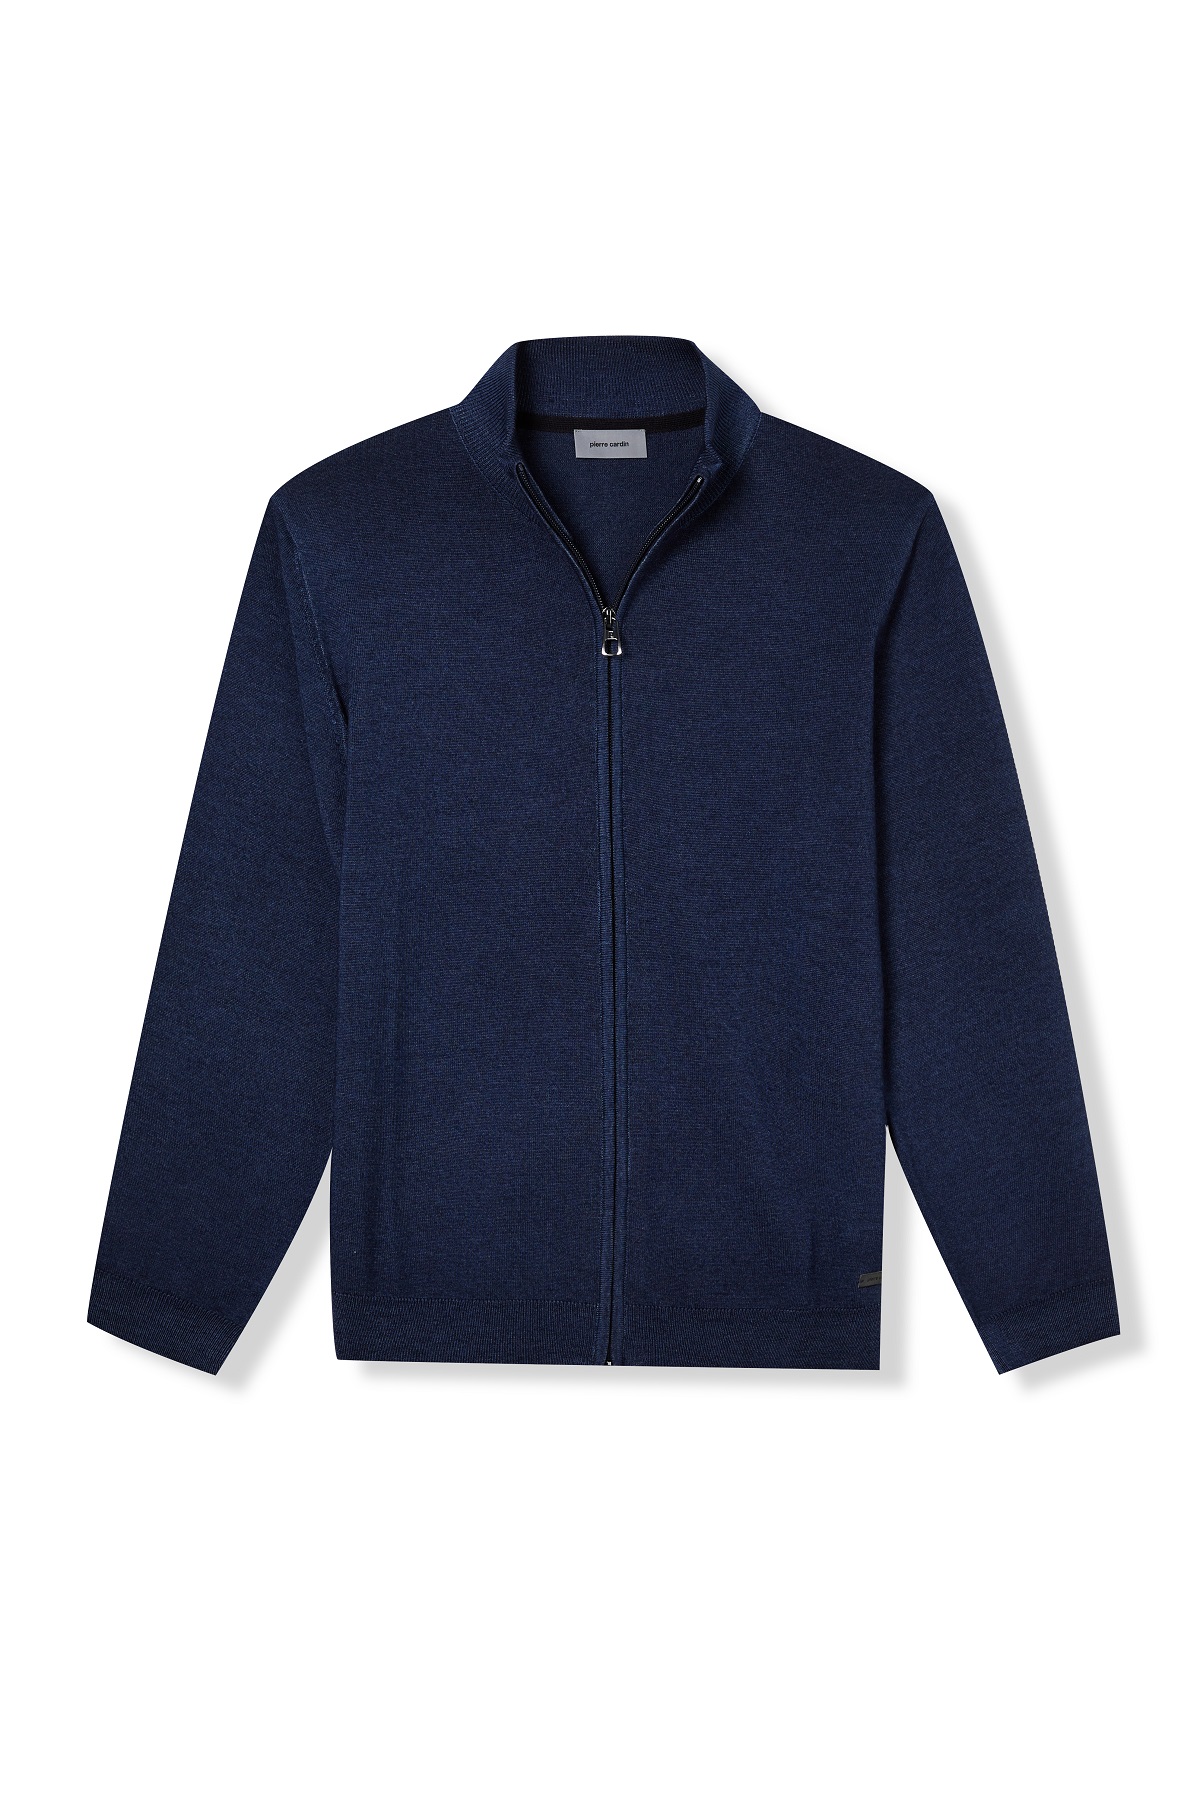 Pierre Cardin pánský vlněný svetr se zipem 50709 5037 6319 Modrá XL